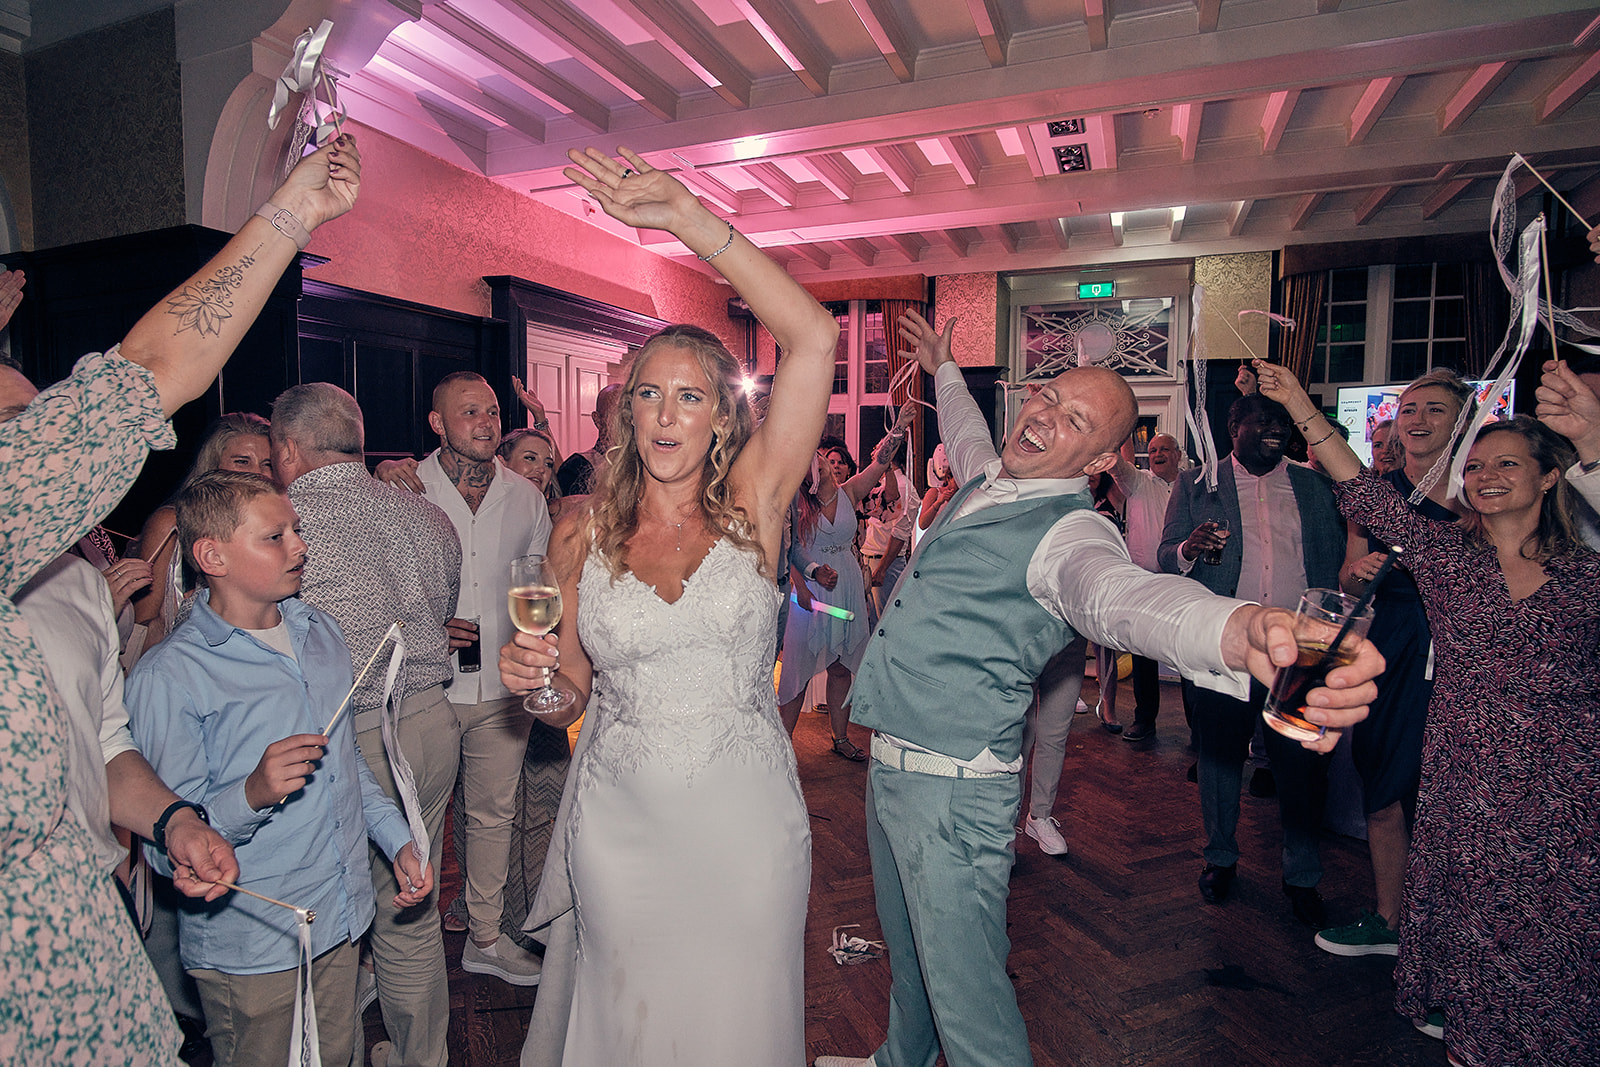 Trouwfotograaf Kasteel Hooge Vuursche in Baarn - De bruidsfotografie van Dennis en Kim - party feest fotografie